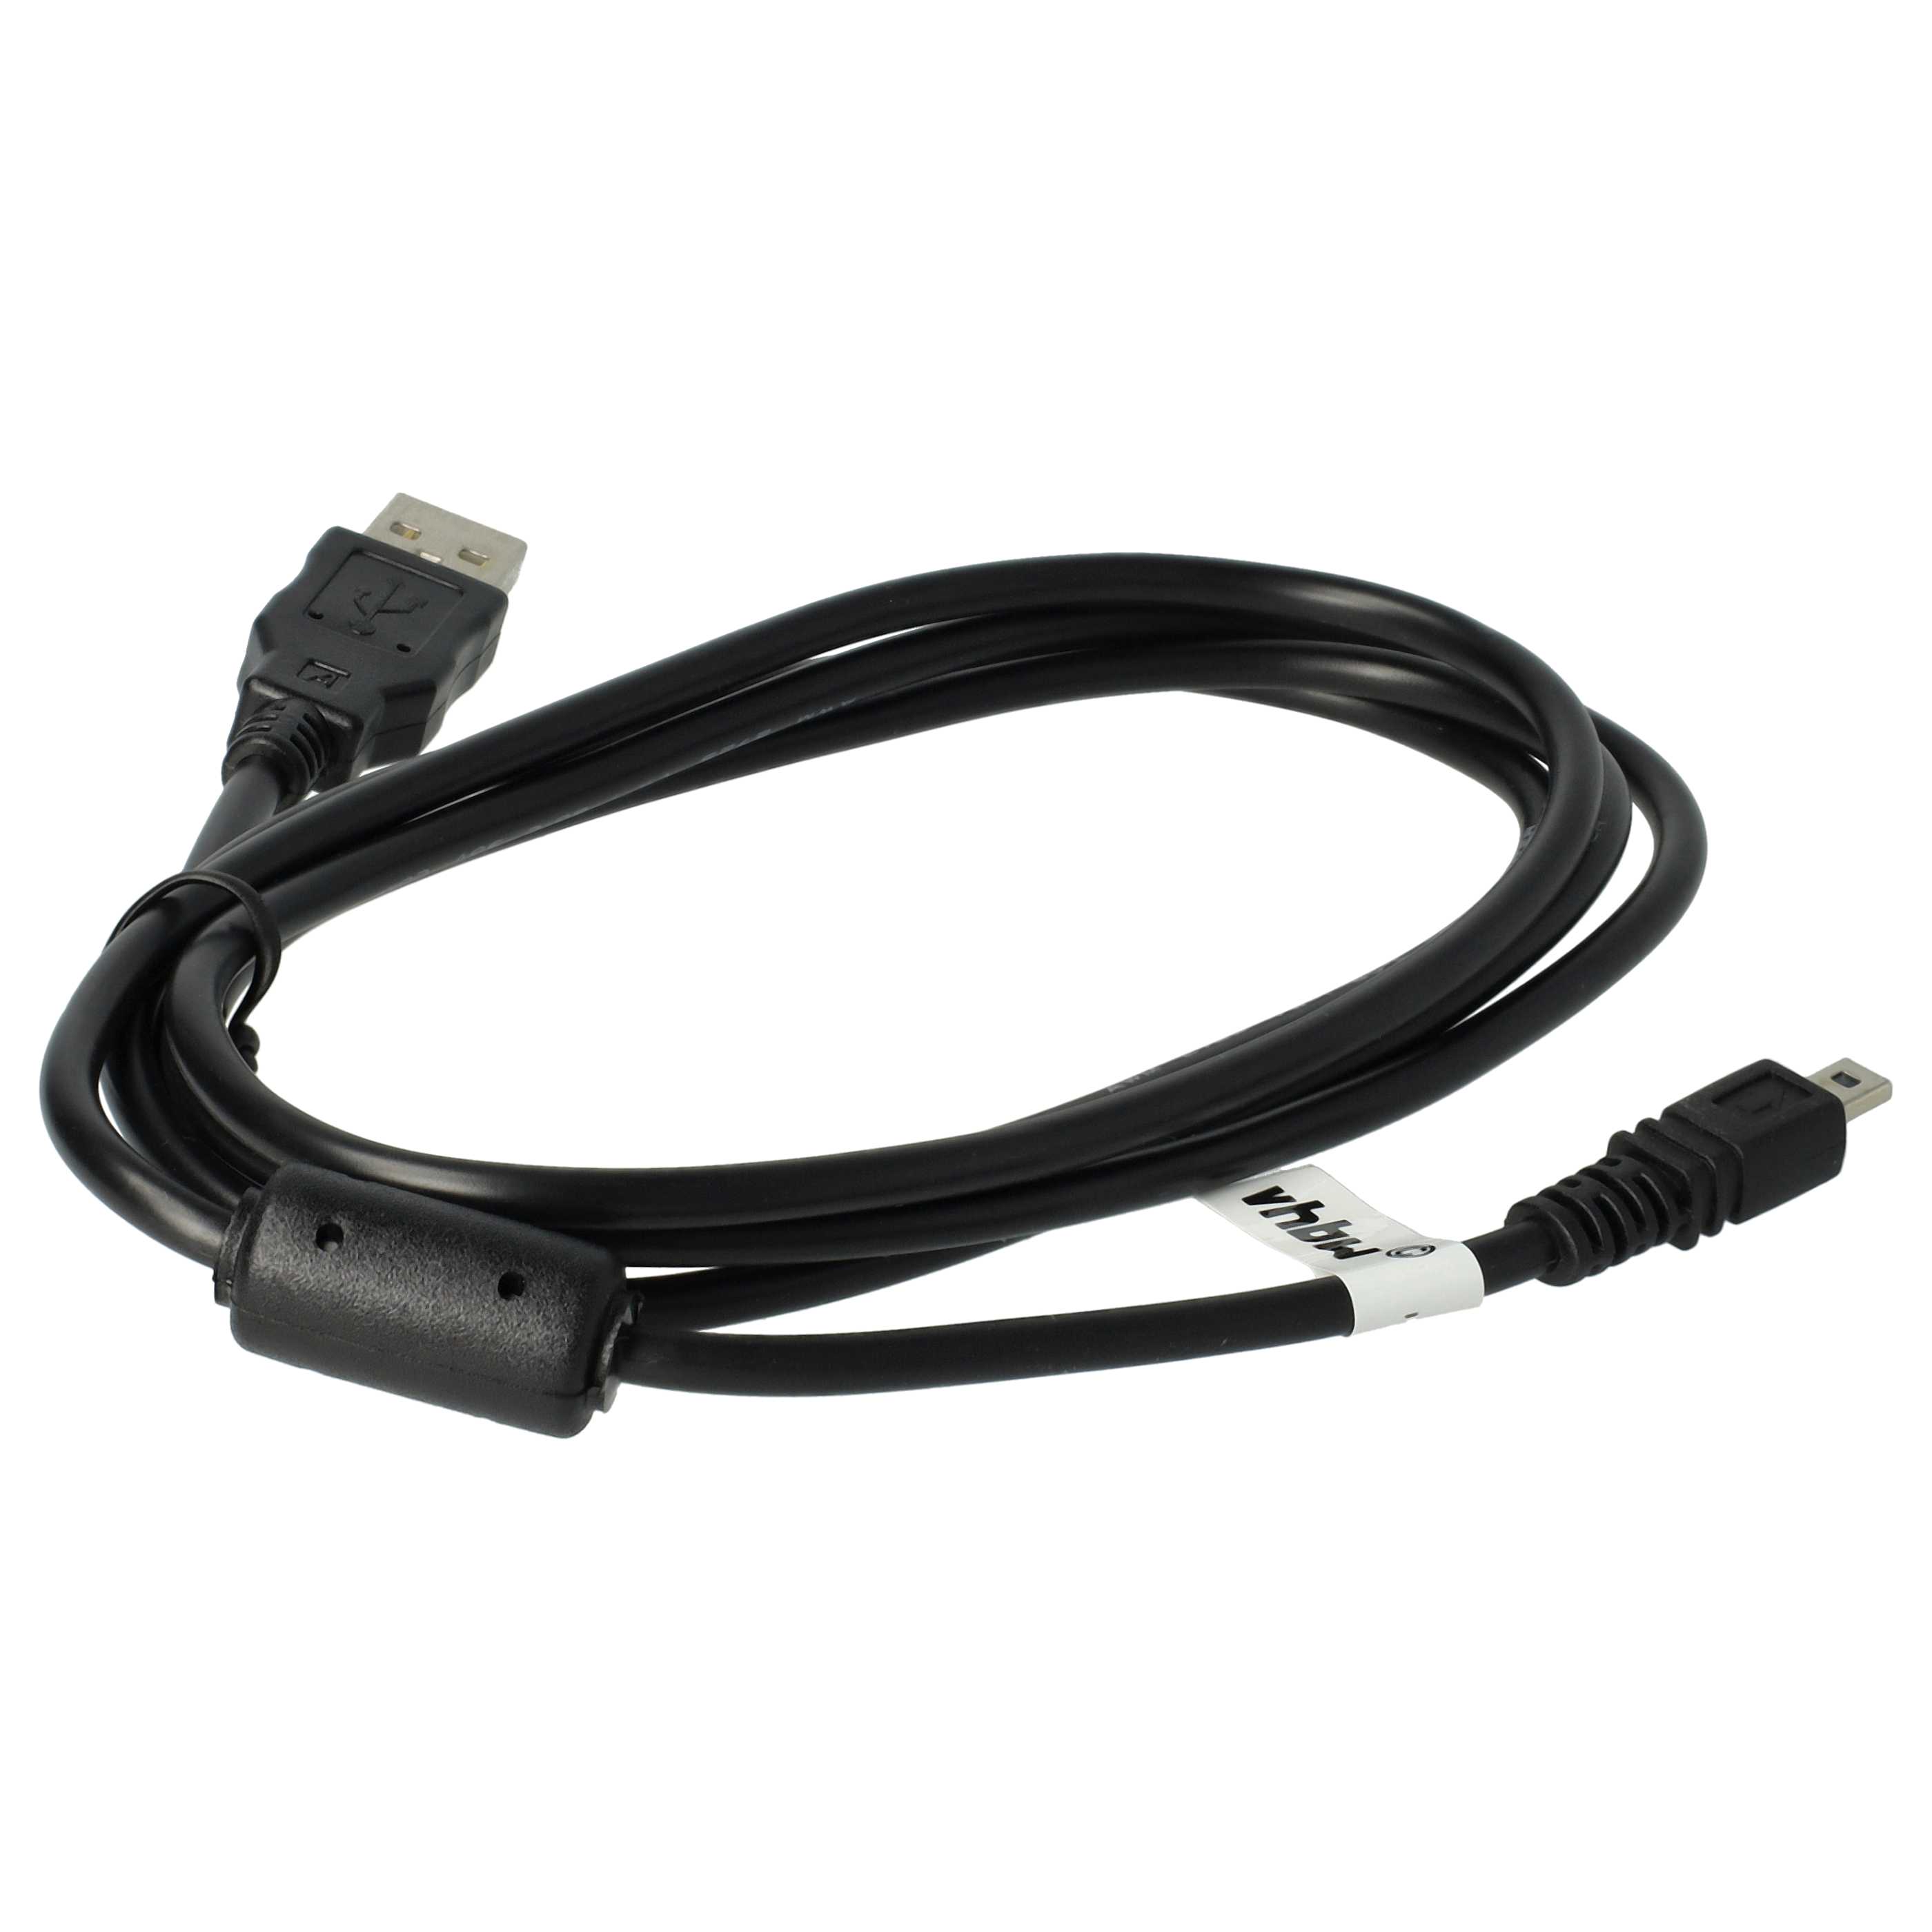 Cavo dati USB sostituisce Casio EMC-5U per fotocamera, camcorder Pentax - 150 cm